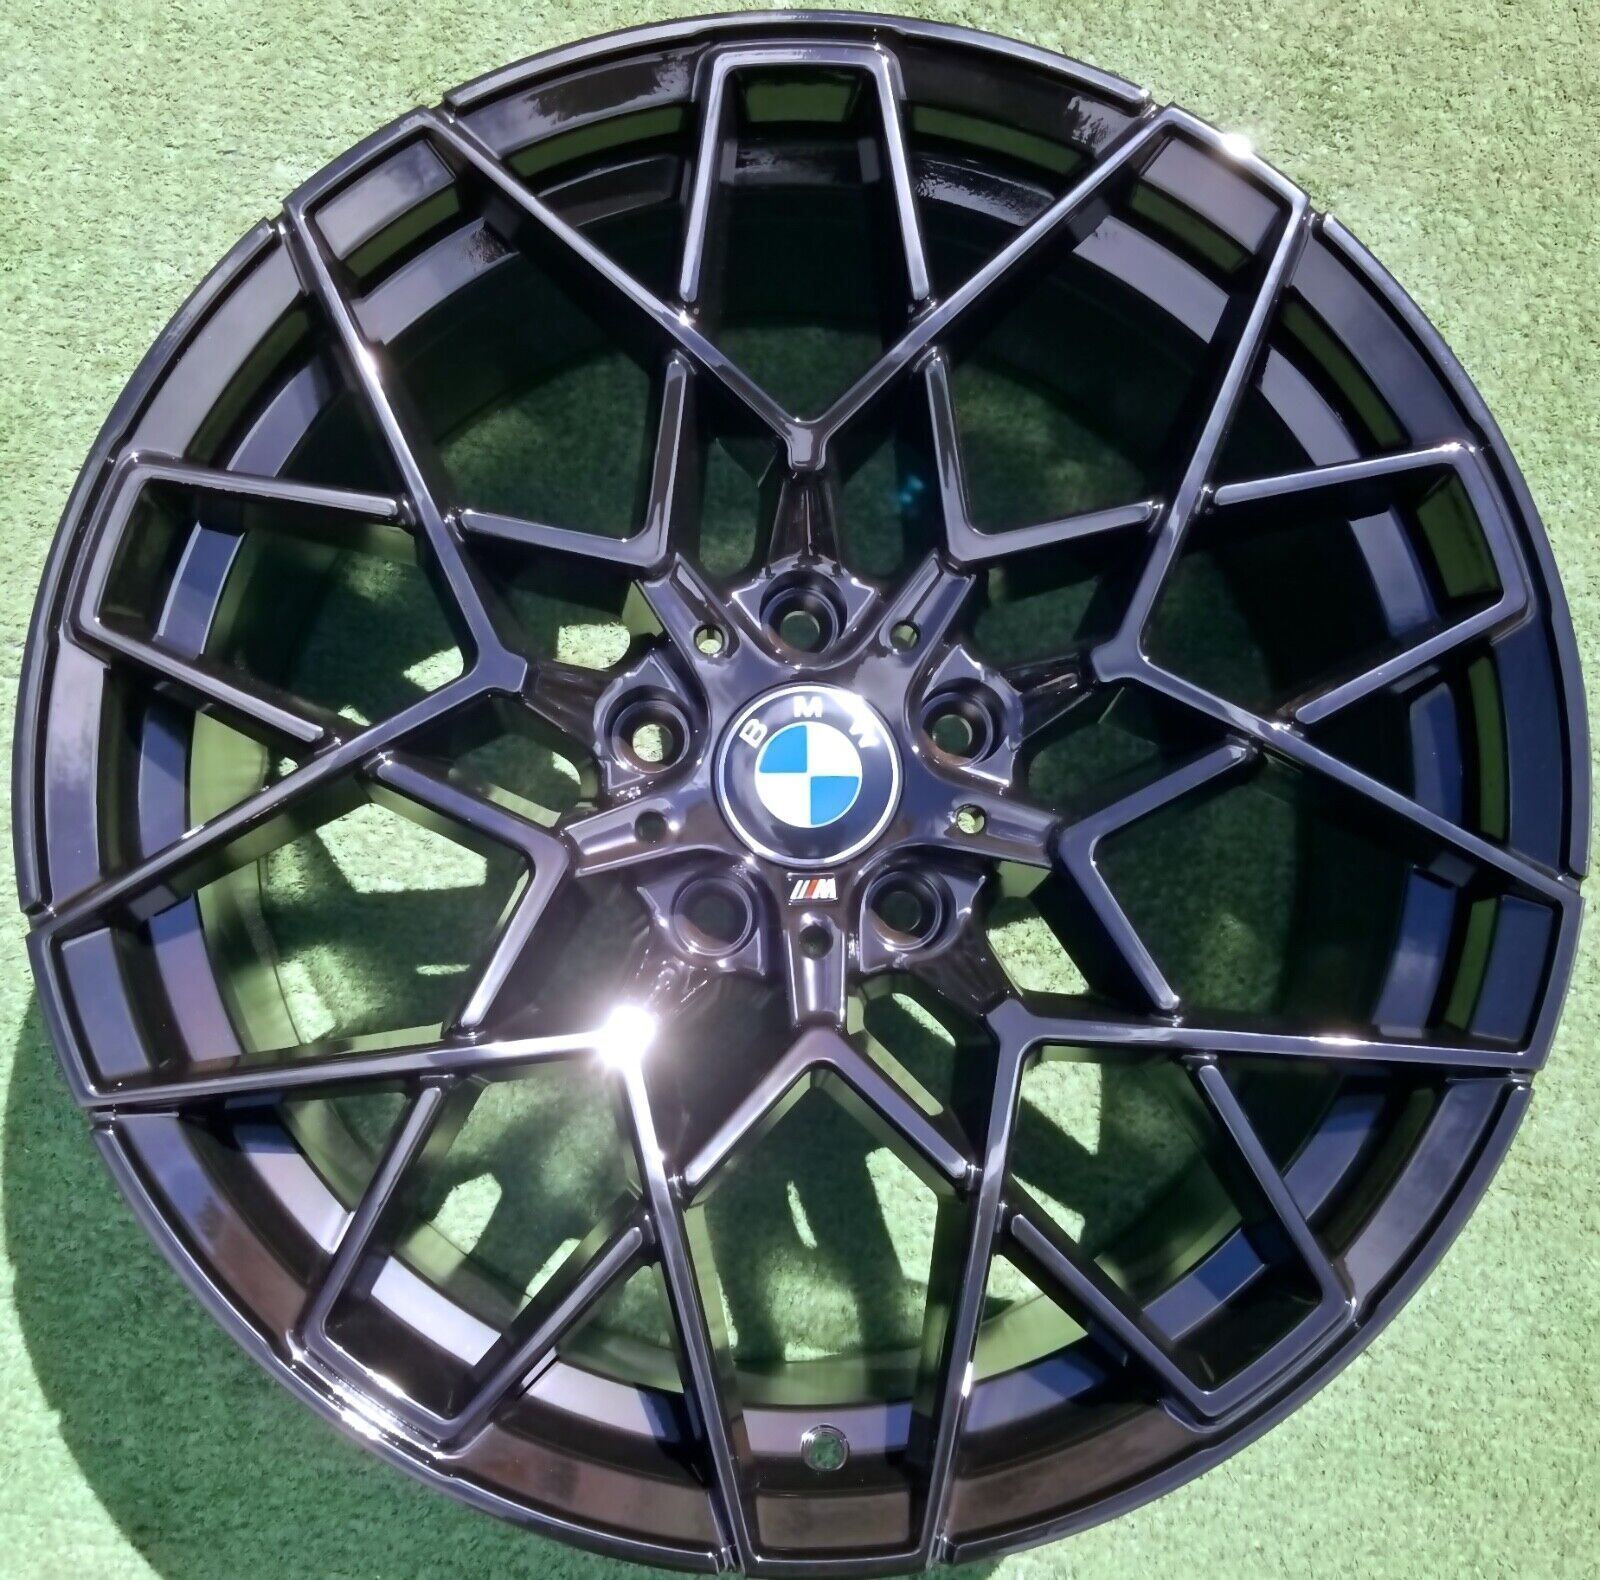 Set M8 M3 M4 Style Wheels fit OEM Factory BMW 335i 428i 435i 19 inch 813M 5x120